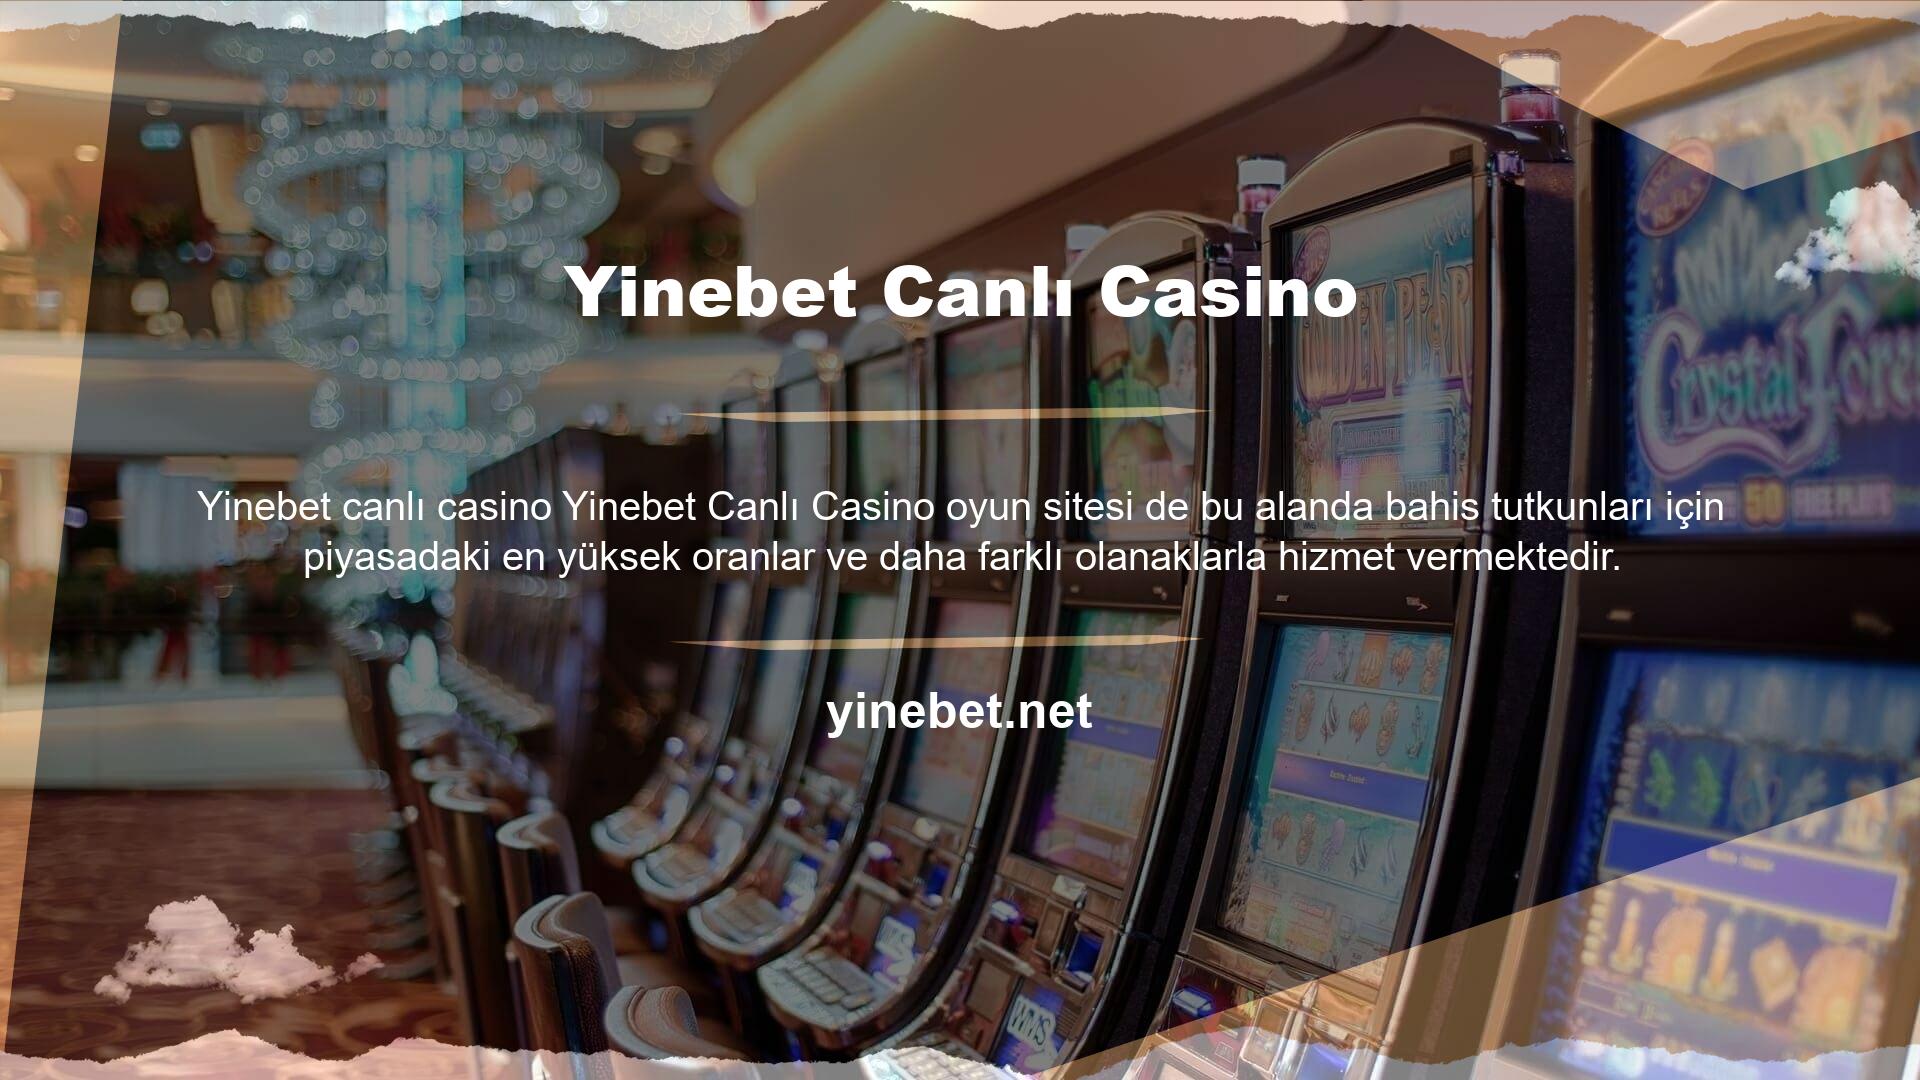 Canlı casino alanında aktif olabilmek için bahisçilerin siteye üye olması gerekmektedir